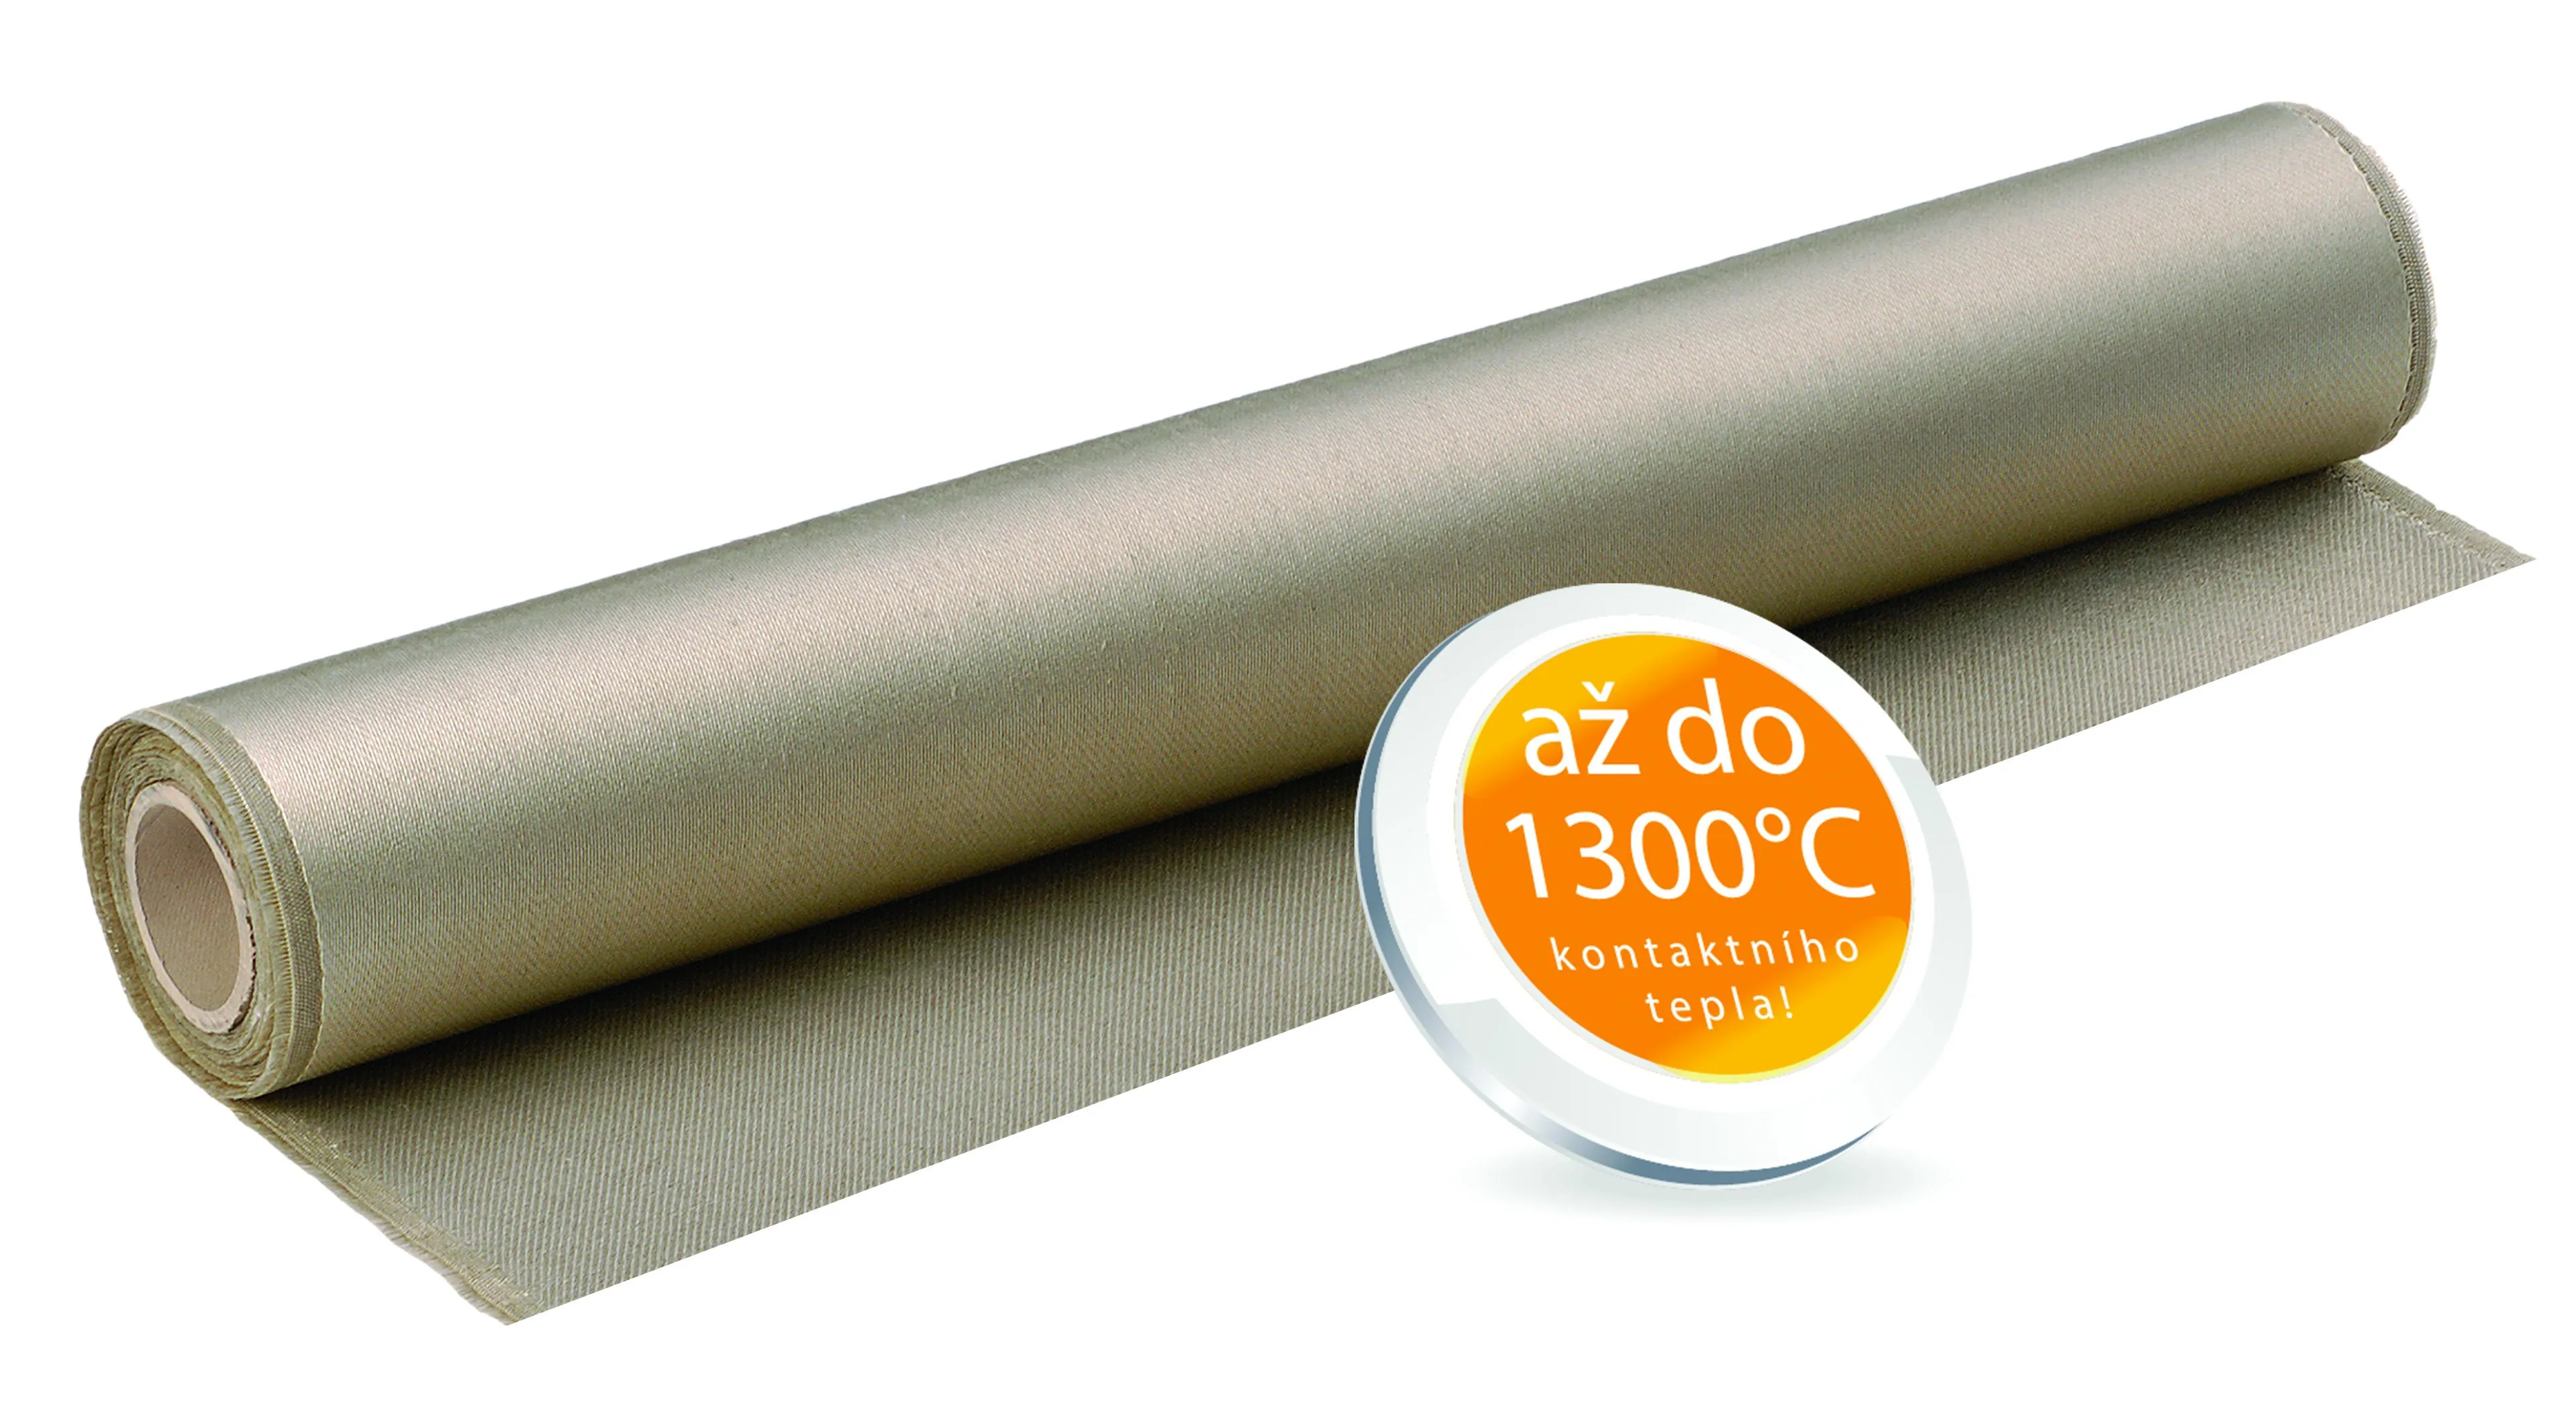 JT 1250 HT - Tepelně odolná tkanina JUTEC do 1300 °C kont. tepla